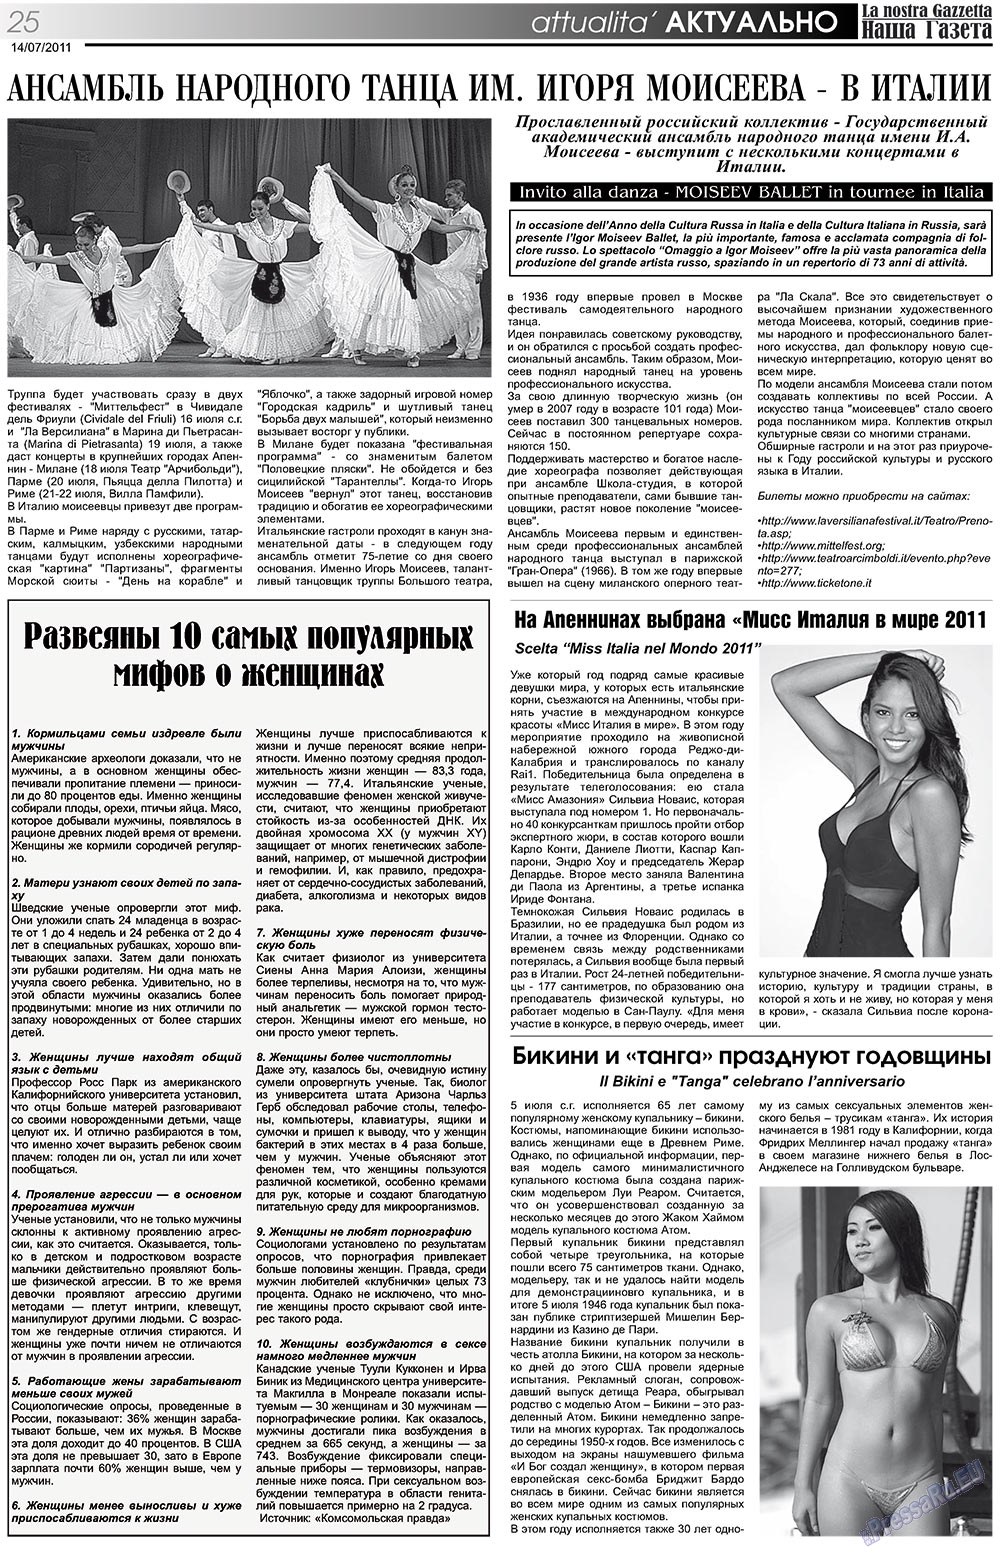 Наша Газета Италия, газета. 2011 №137 стр.25